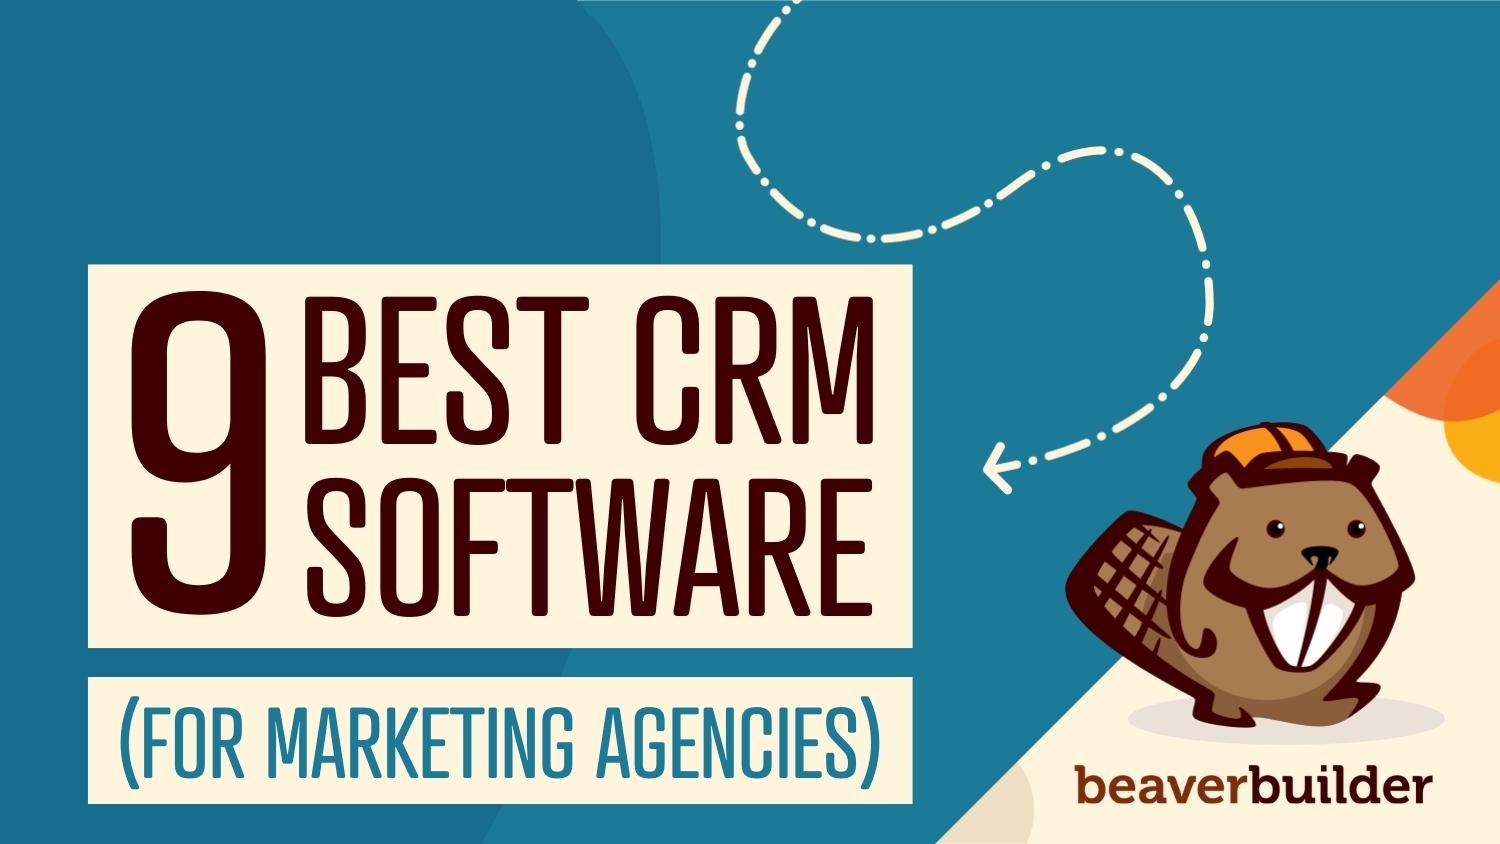 9 best crm software for marketing agencies beaver builder blog